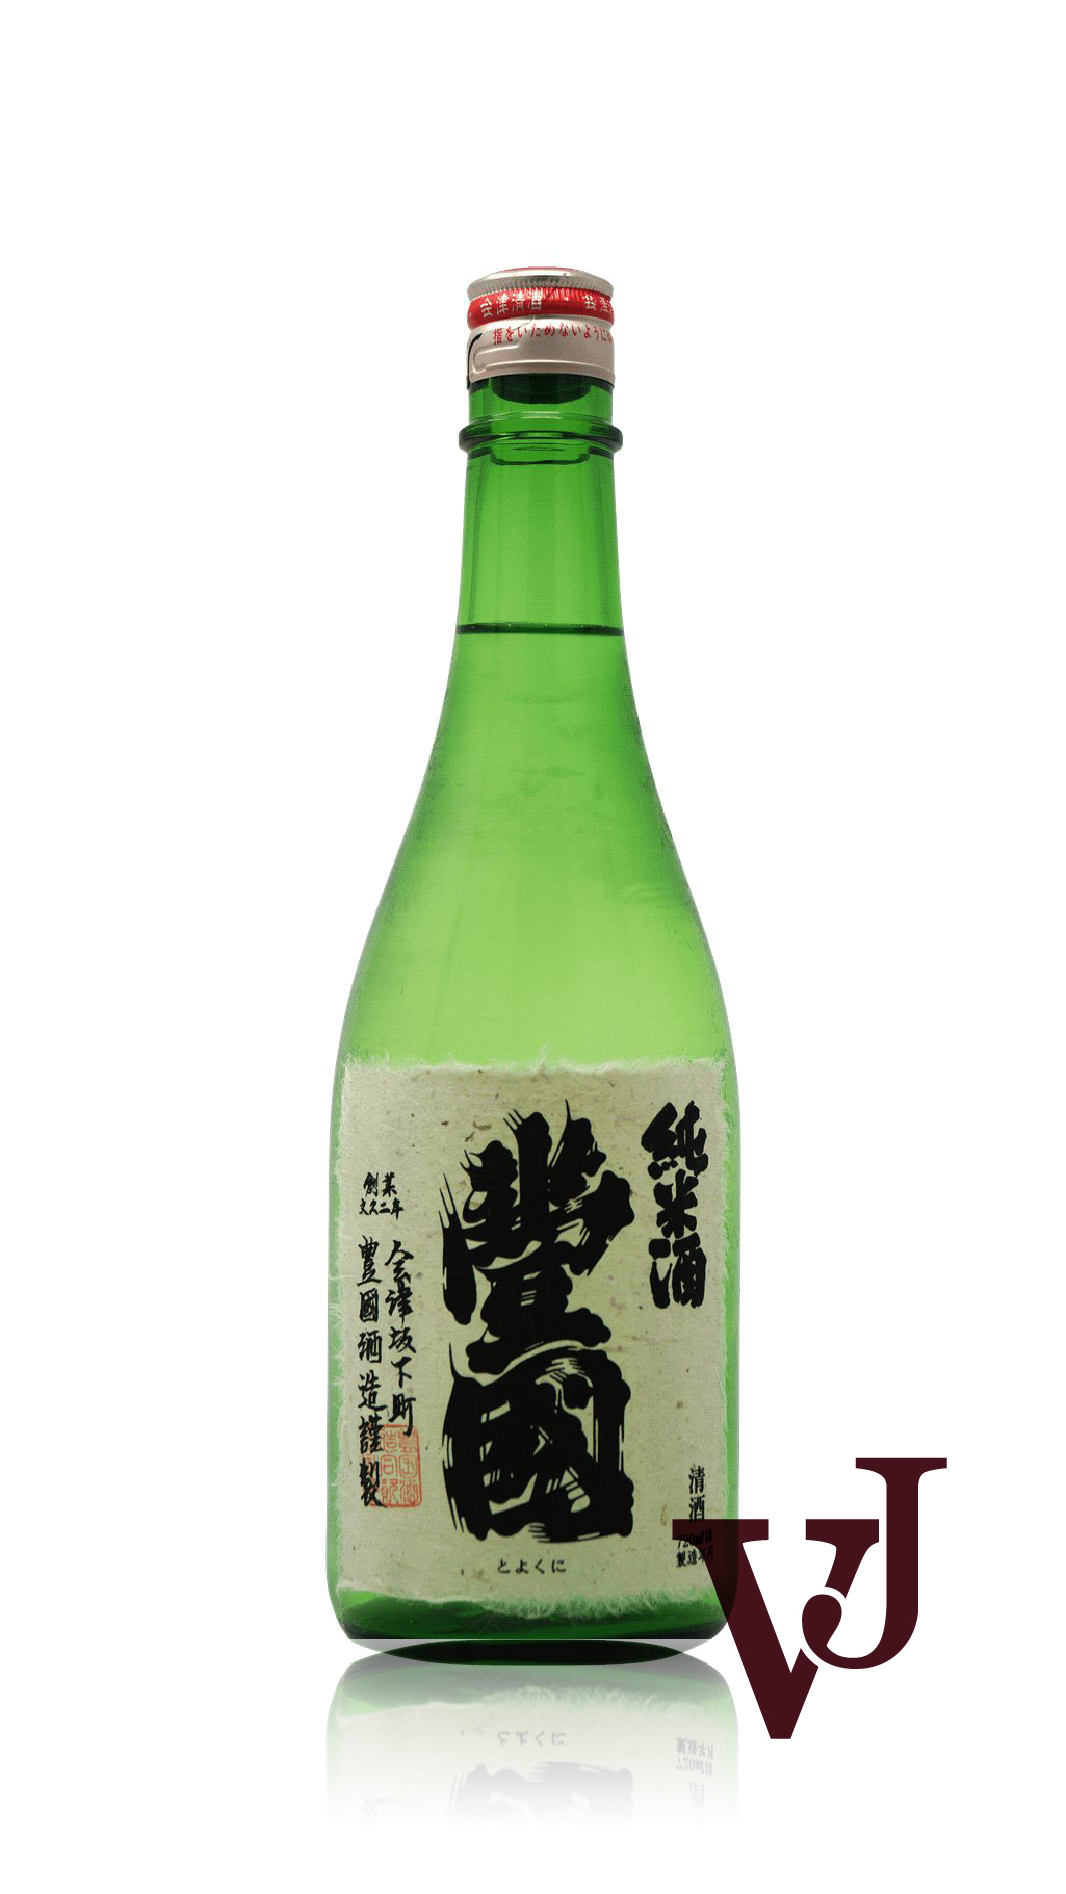 Övrigt vin - Toyokuni Junmai Shu artikel nummer 7651101 från producenten Flying Brewery från området Japan - Vinjournalen.se